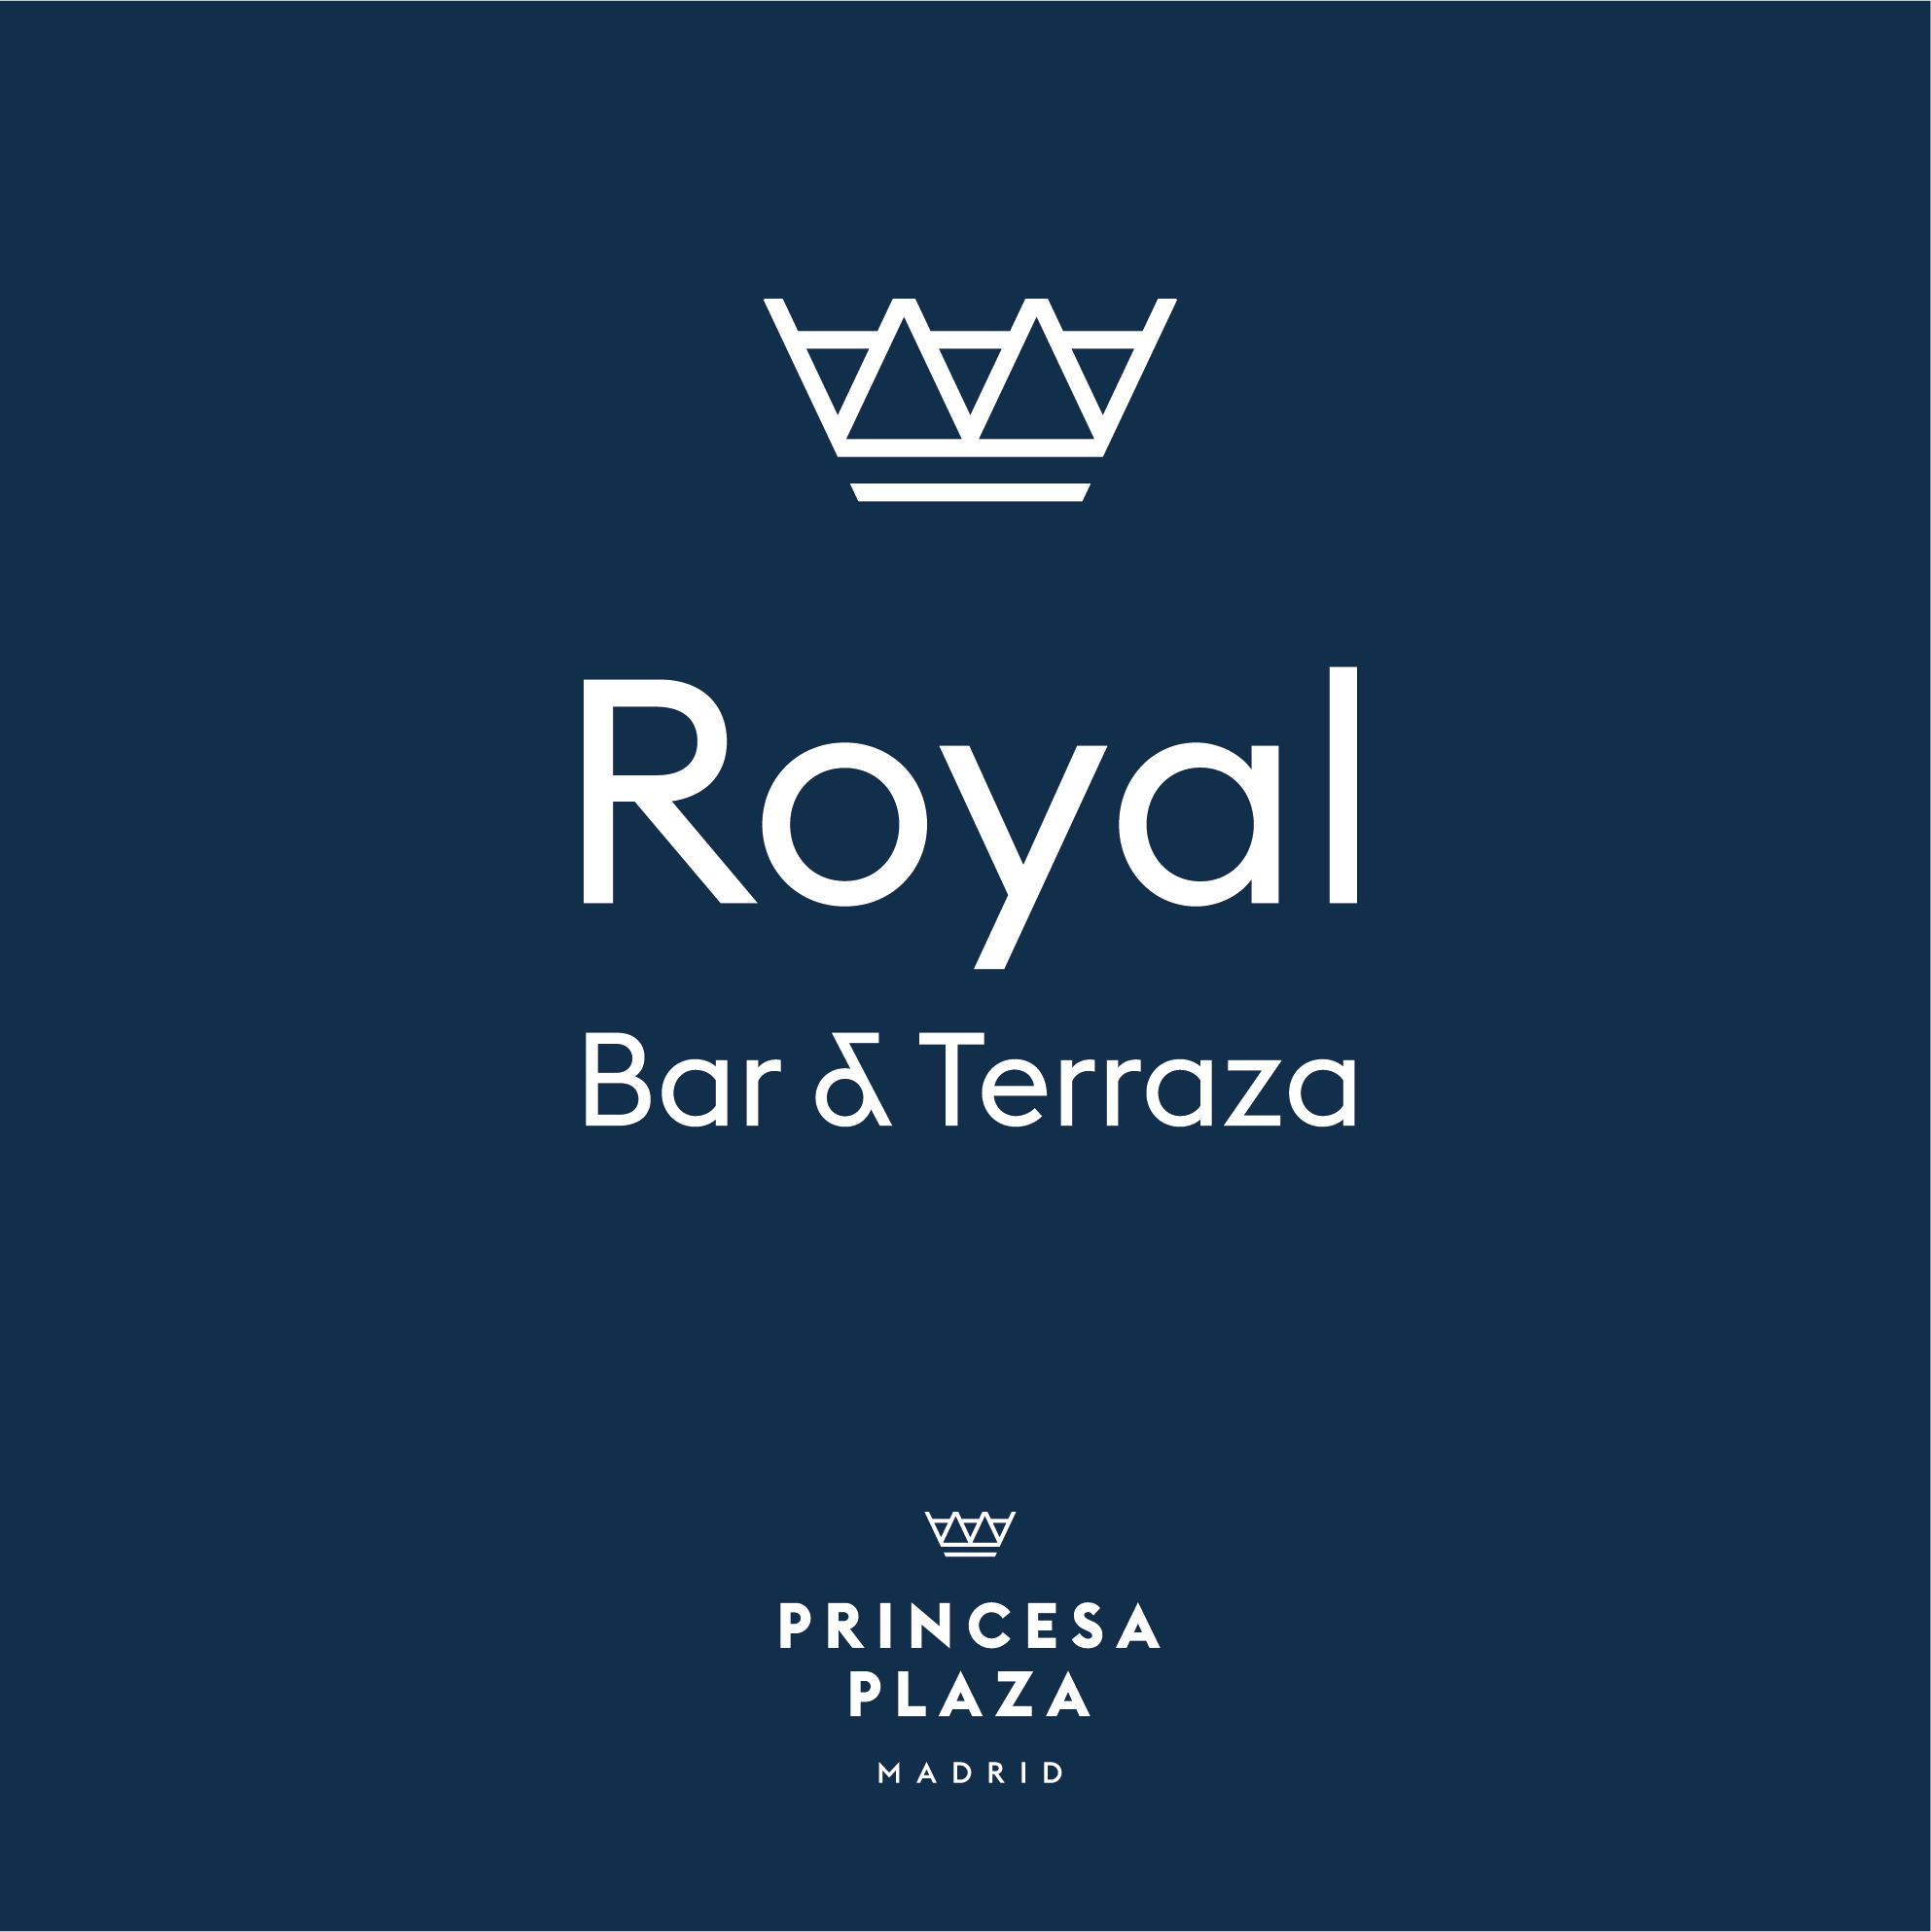 Princesa Plaza – Royal Bar & Terraza